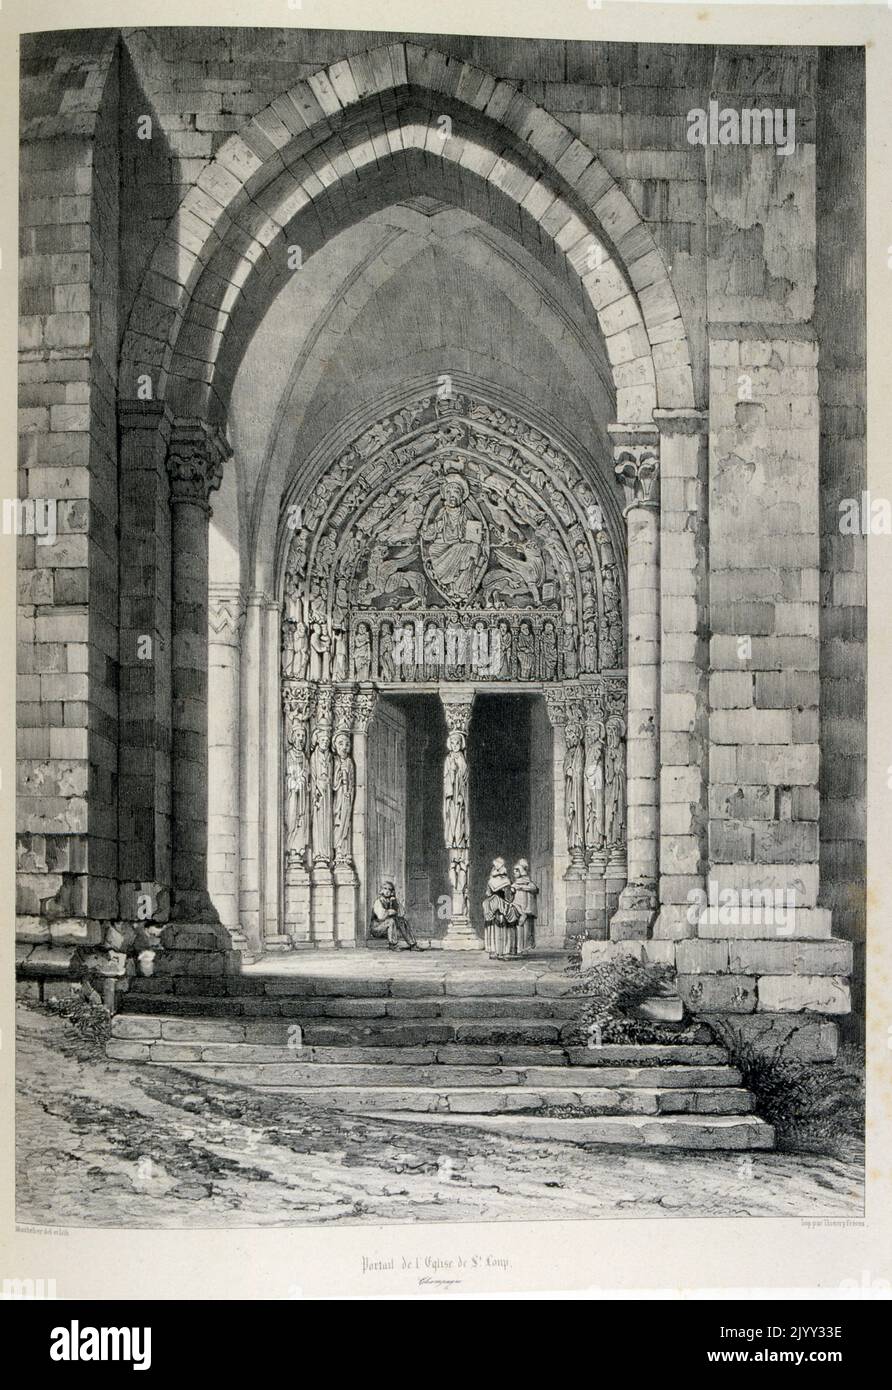 19th dessins du siècle de l'Eglise Saint-Etienne une église gothique, en Seine-et-Marne ; France. Brie vient de la Briga gaulâtre, ce qui signifie « plateau ». Le "Comte Robert" était Robert I de Dreux qui a possédé le 13th siècle, a eu la ville Banque D'Images